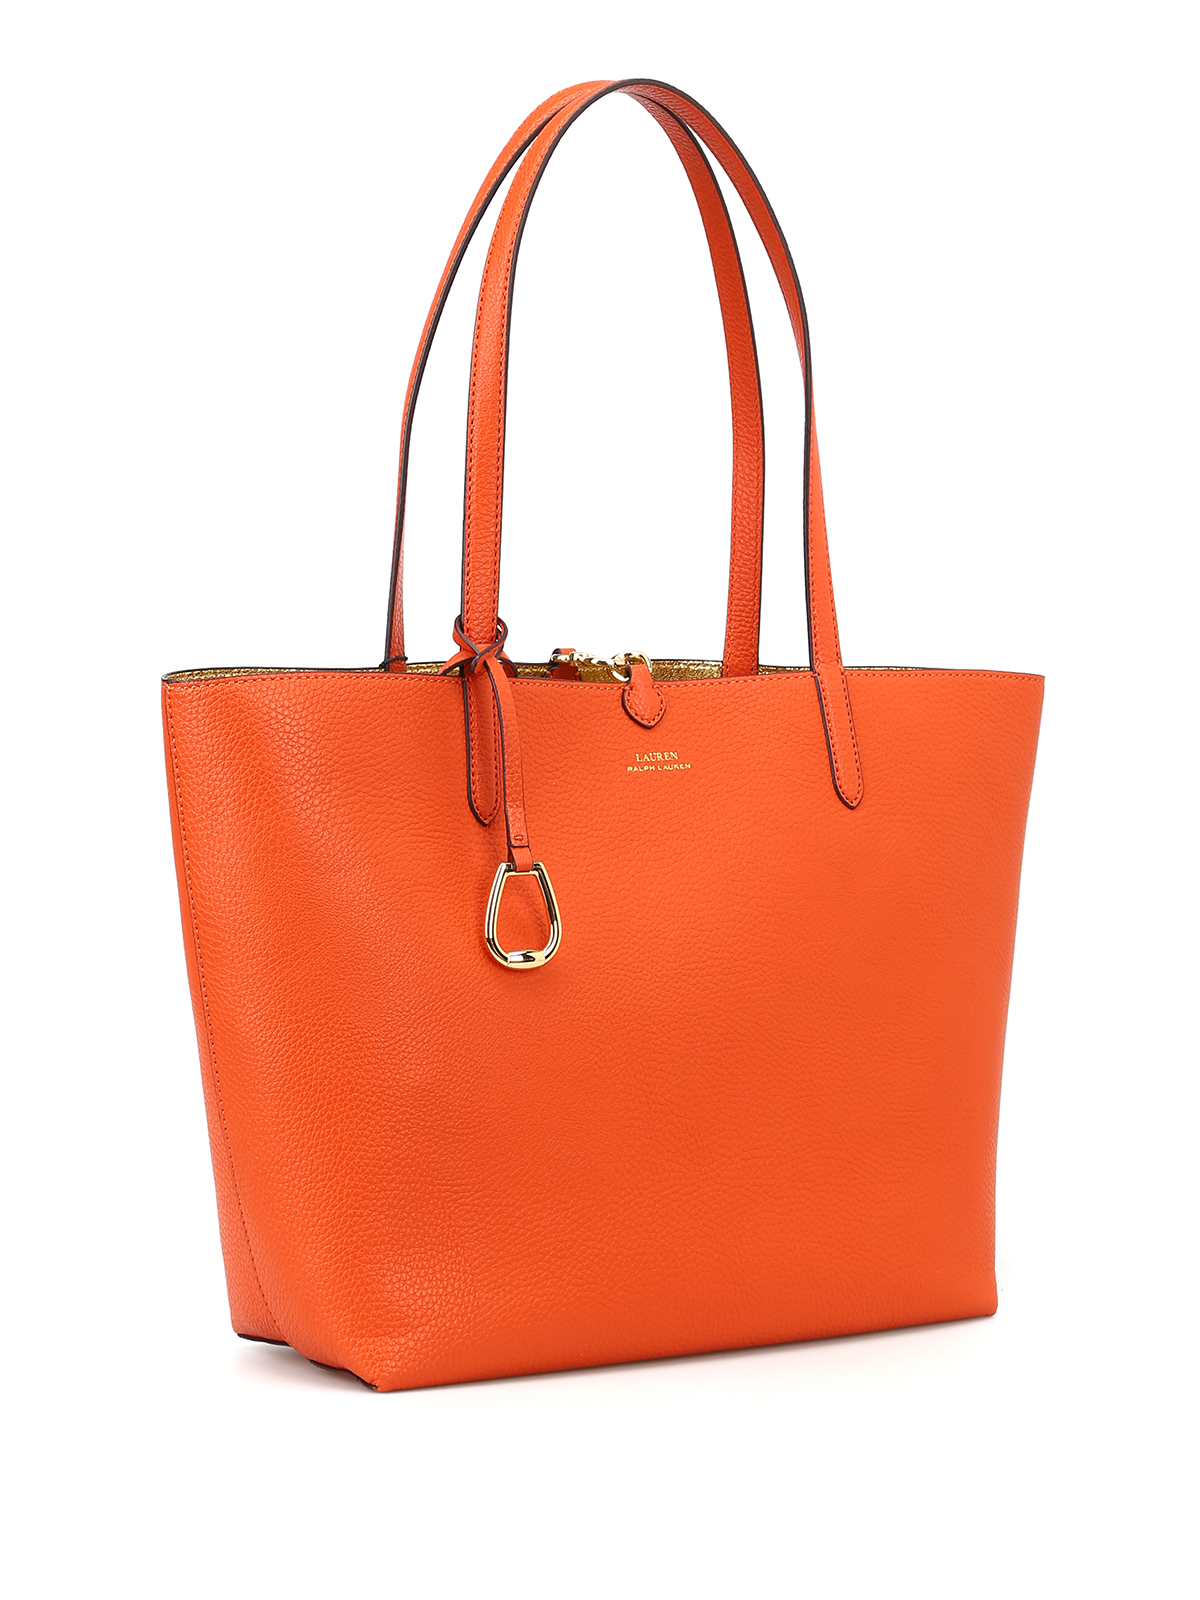 Kwik alias Doorzichtig Totes bags Ralph Lauren - Merrimack orange and gold reversible tote -  431699029003